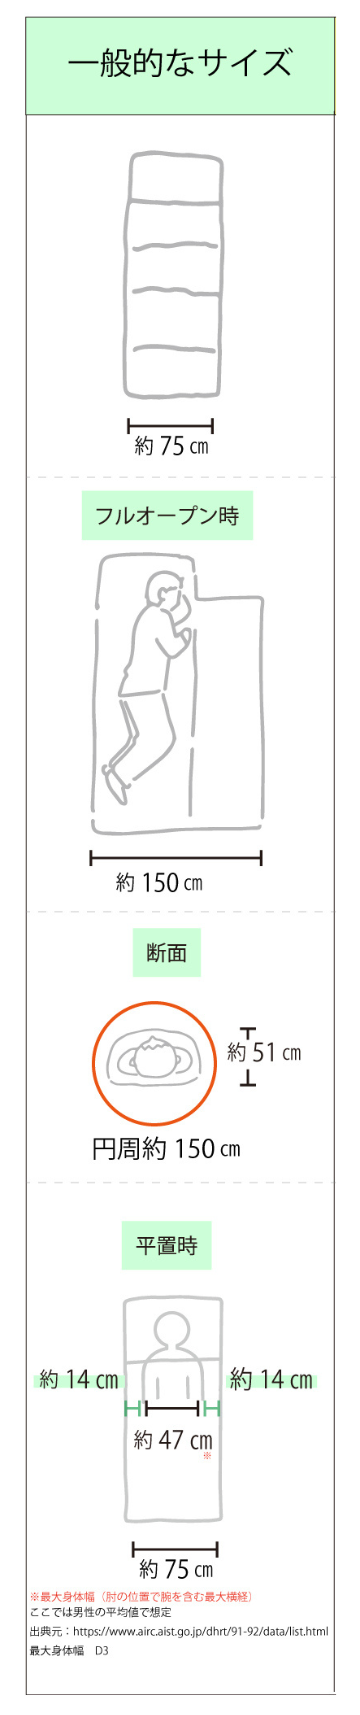 寝袋のサイズ比較